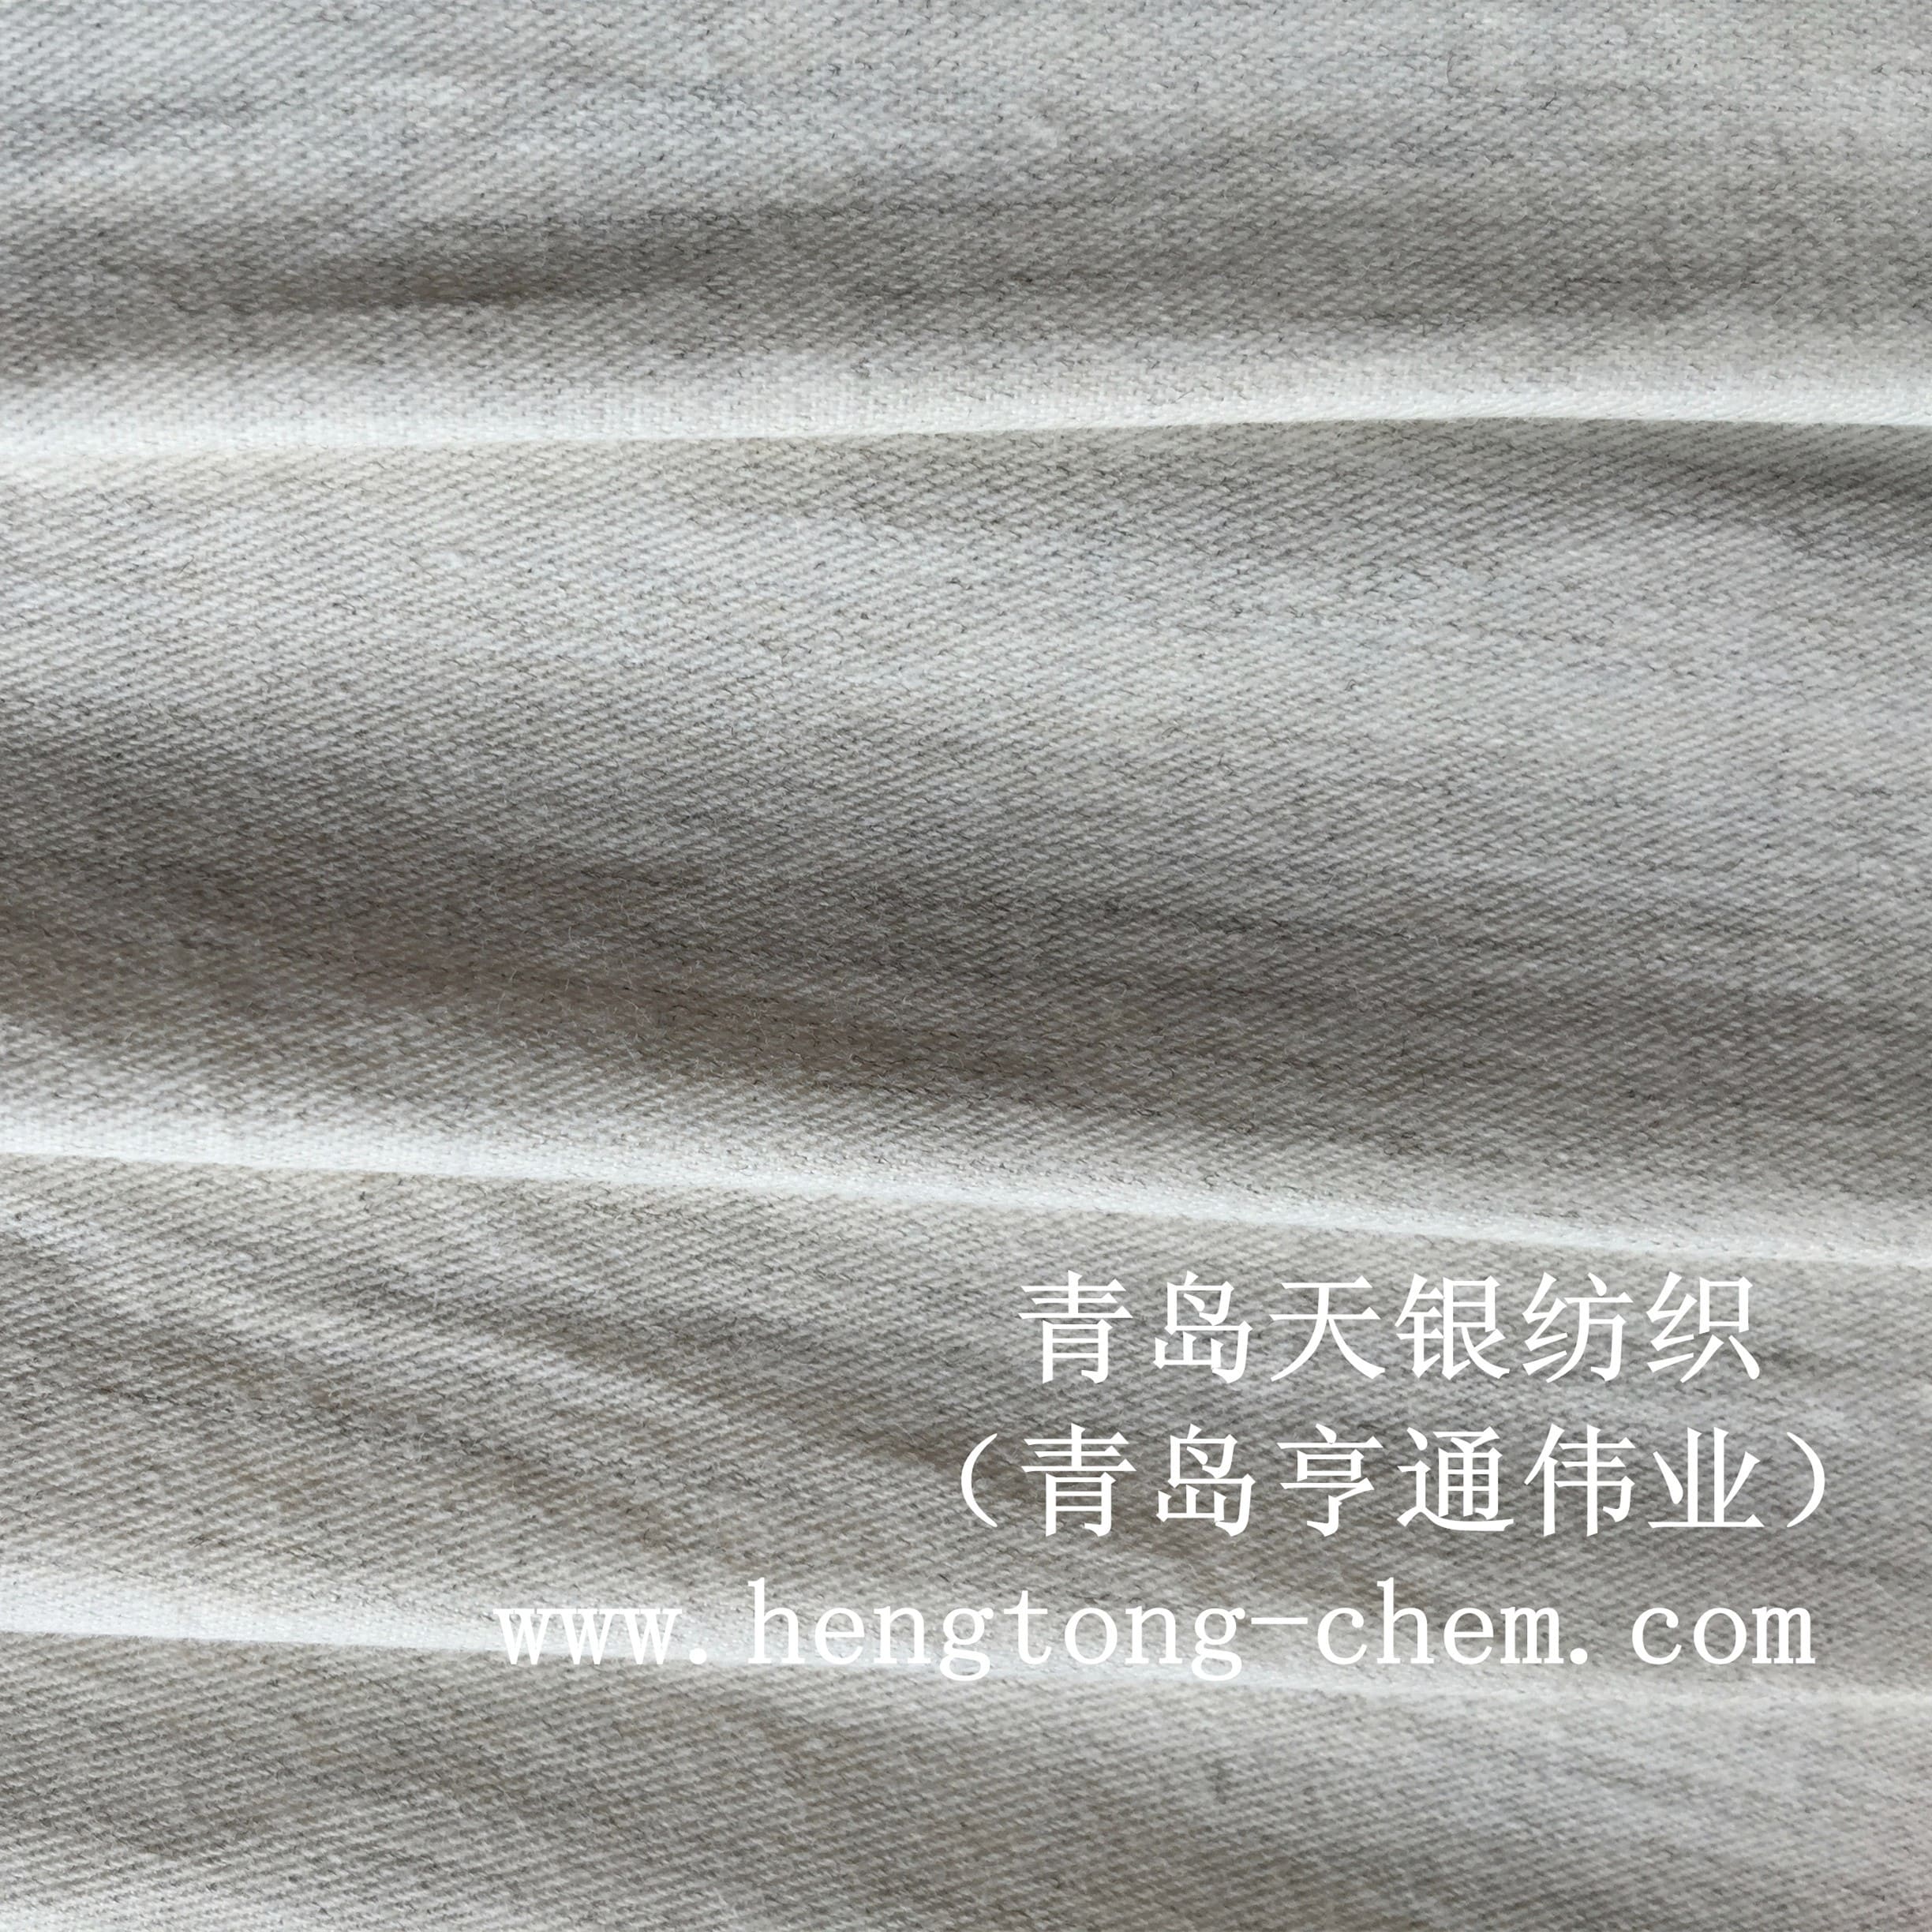 青岛天银纺织厂家直销银短纤和棉混纺床单布抗菌棉料